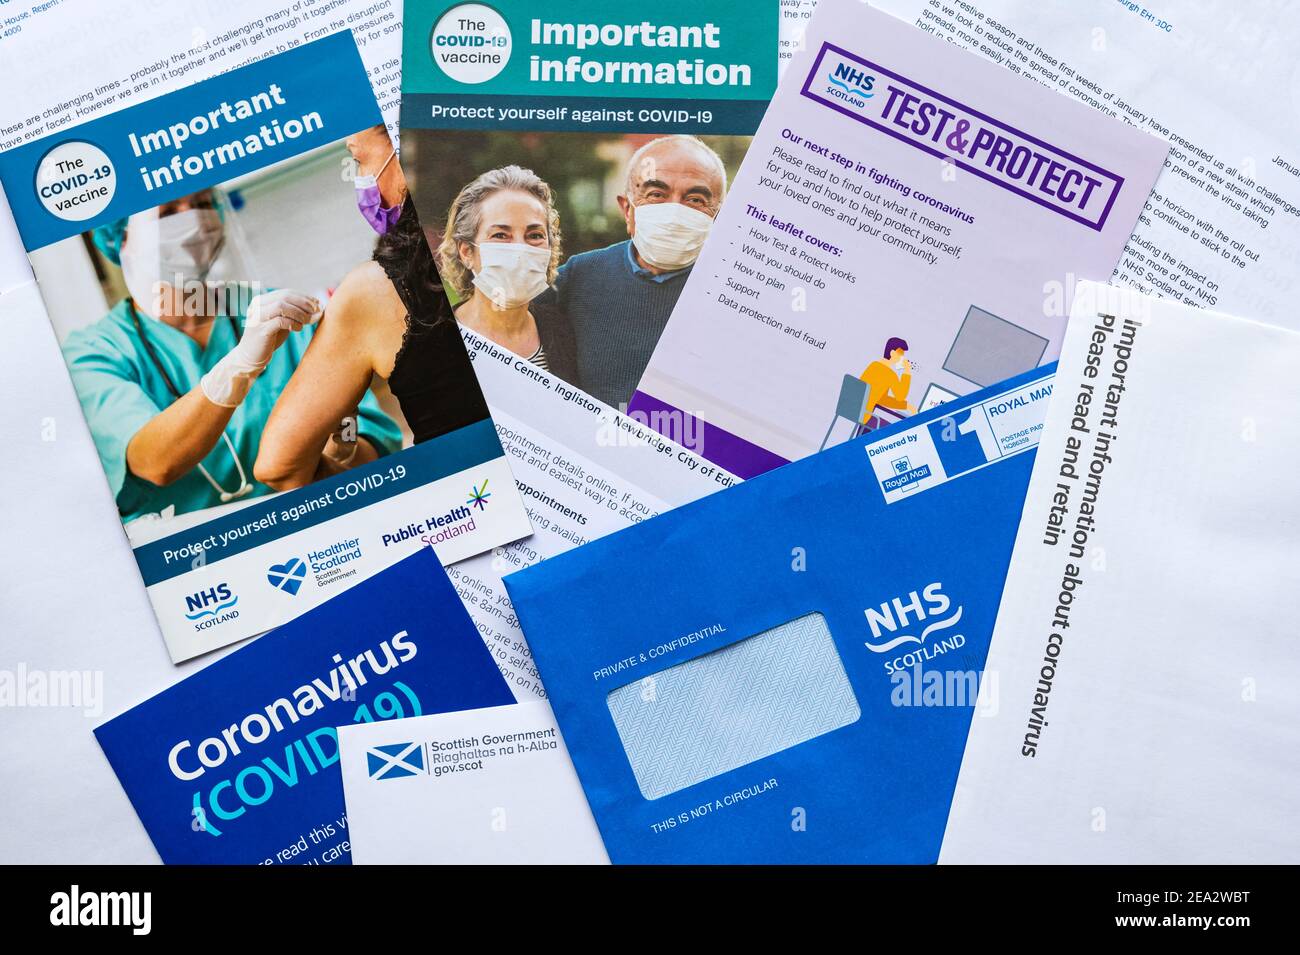 Dépliants, lettres et lettre de nomination pour un vaccin au Royaume-Uni et au gouvernement écossais lors de la pandémie du coronavirus Covid-19, Écosse, Royaume-Uni Banque D'Images